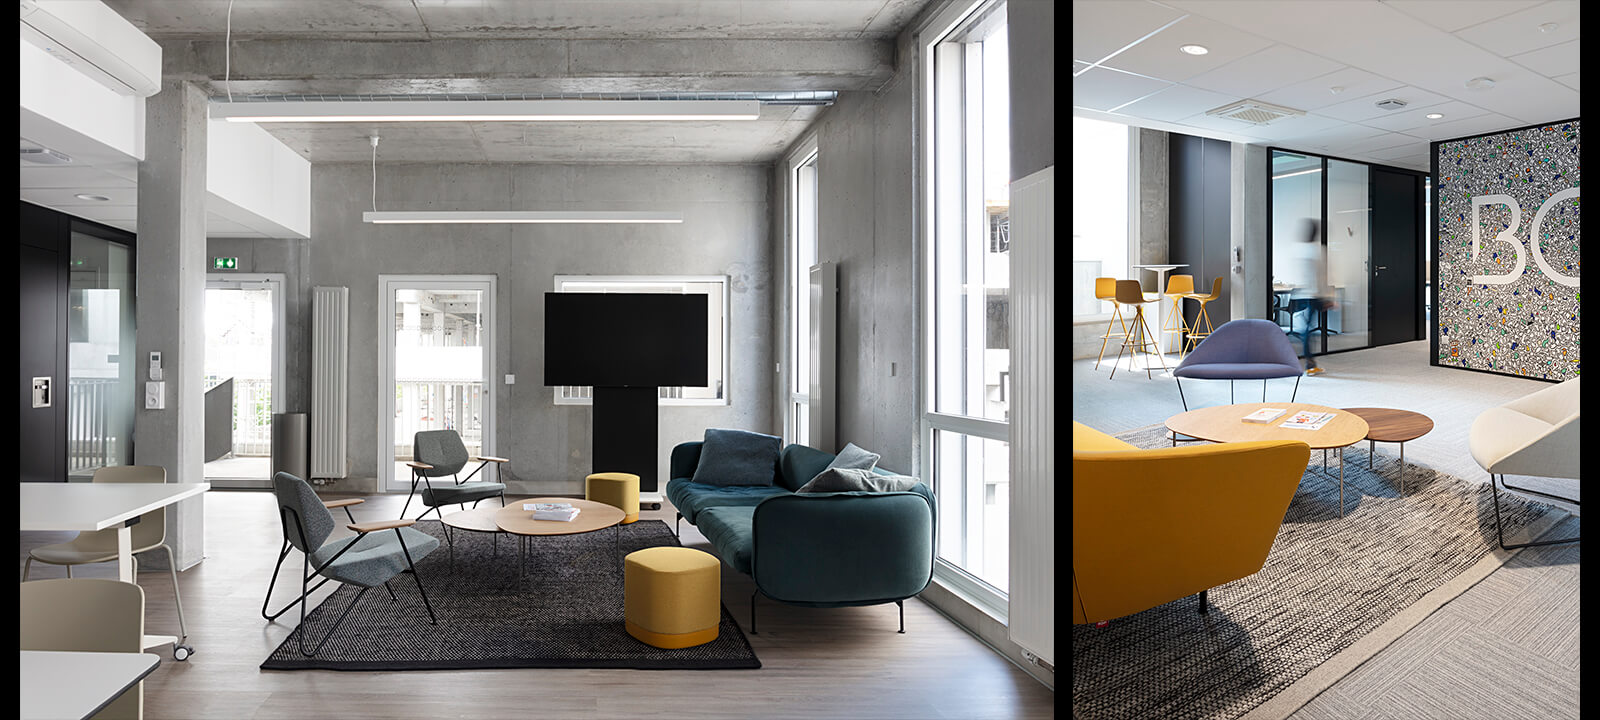 Photographie architecture intérieur bureaux Becouze meublé par IDM et conçu parEspace Identité faite par Gwenaelle Hoyet